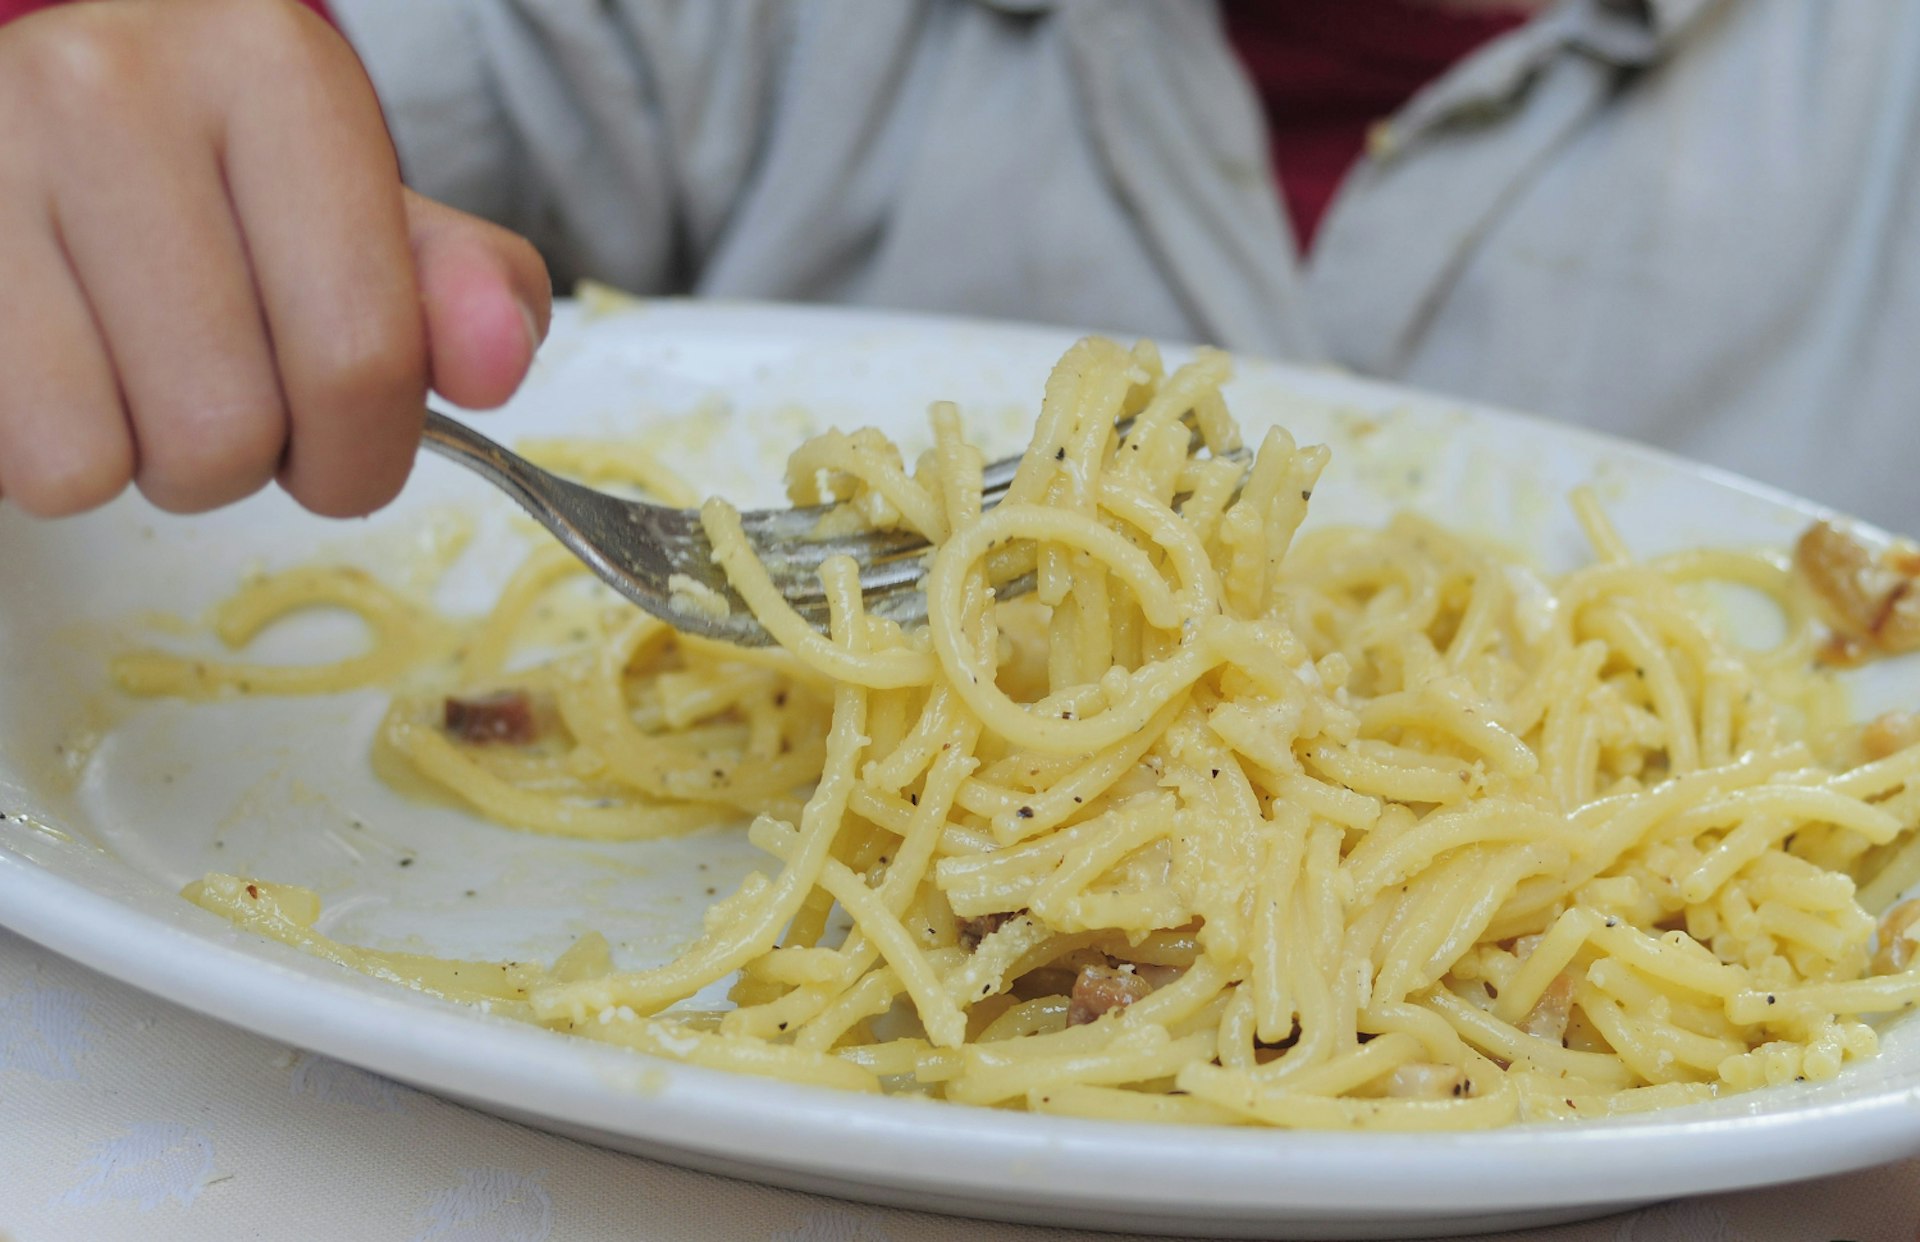 Tucking in to the Roman classic, spaghetti carbonara.